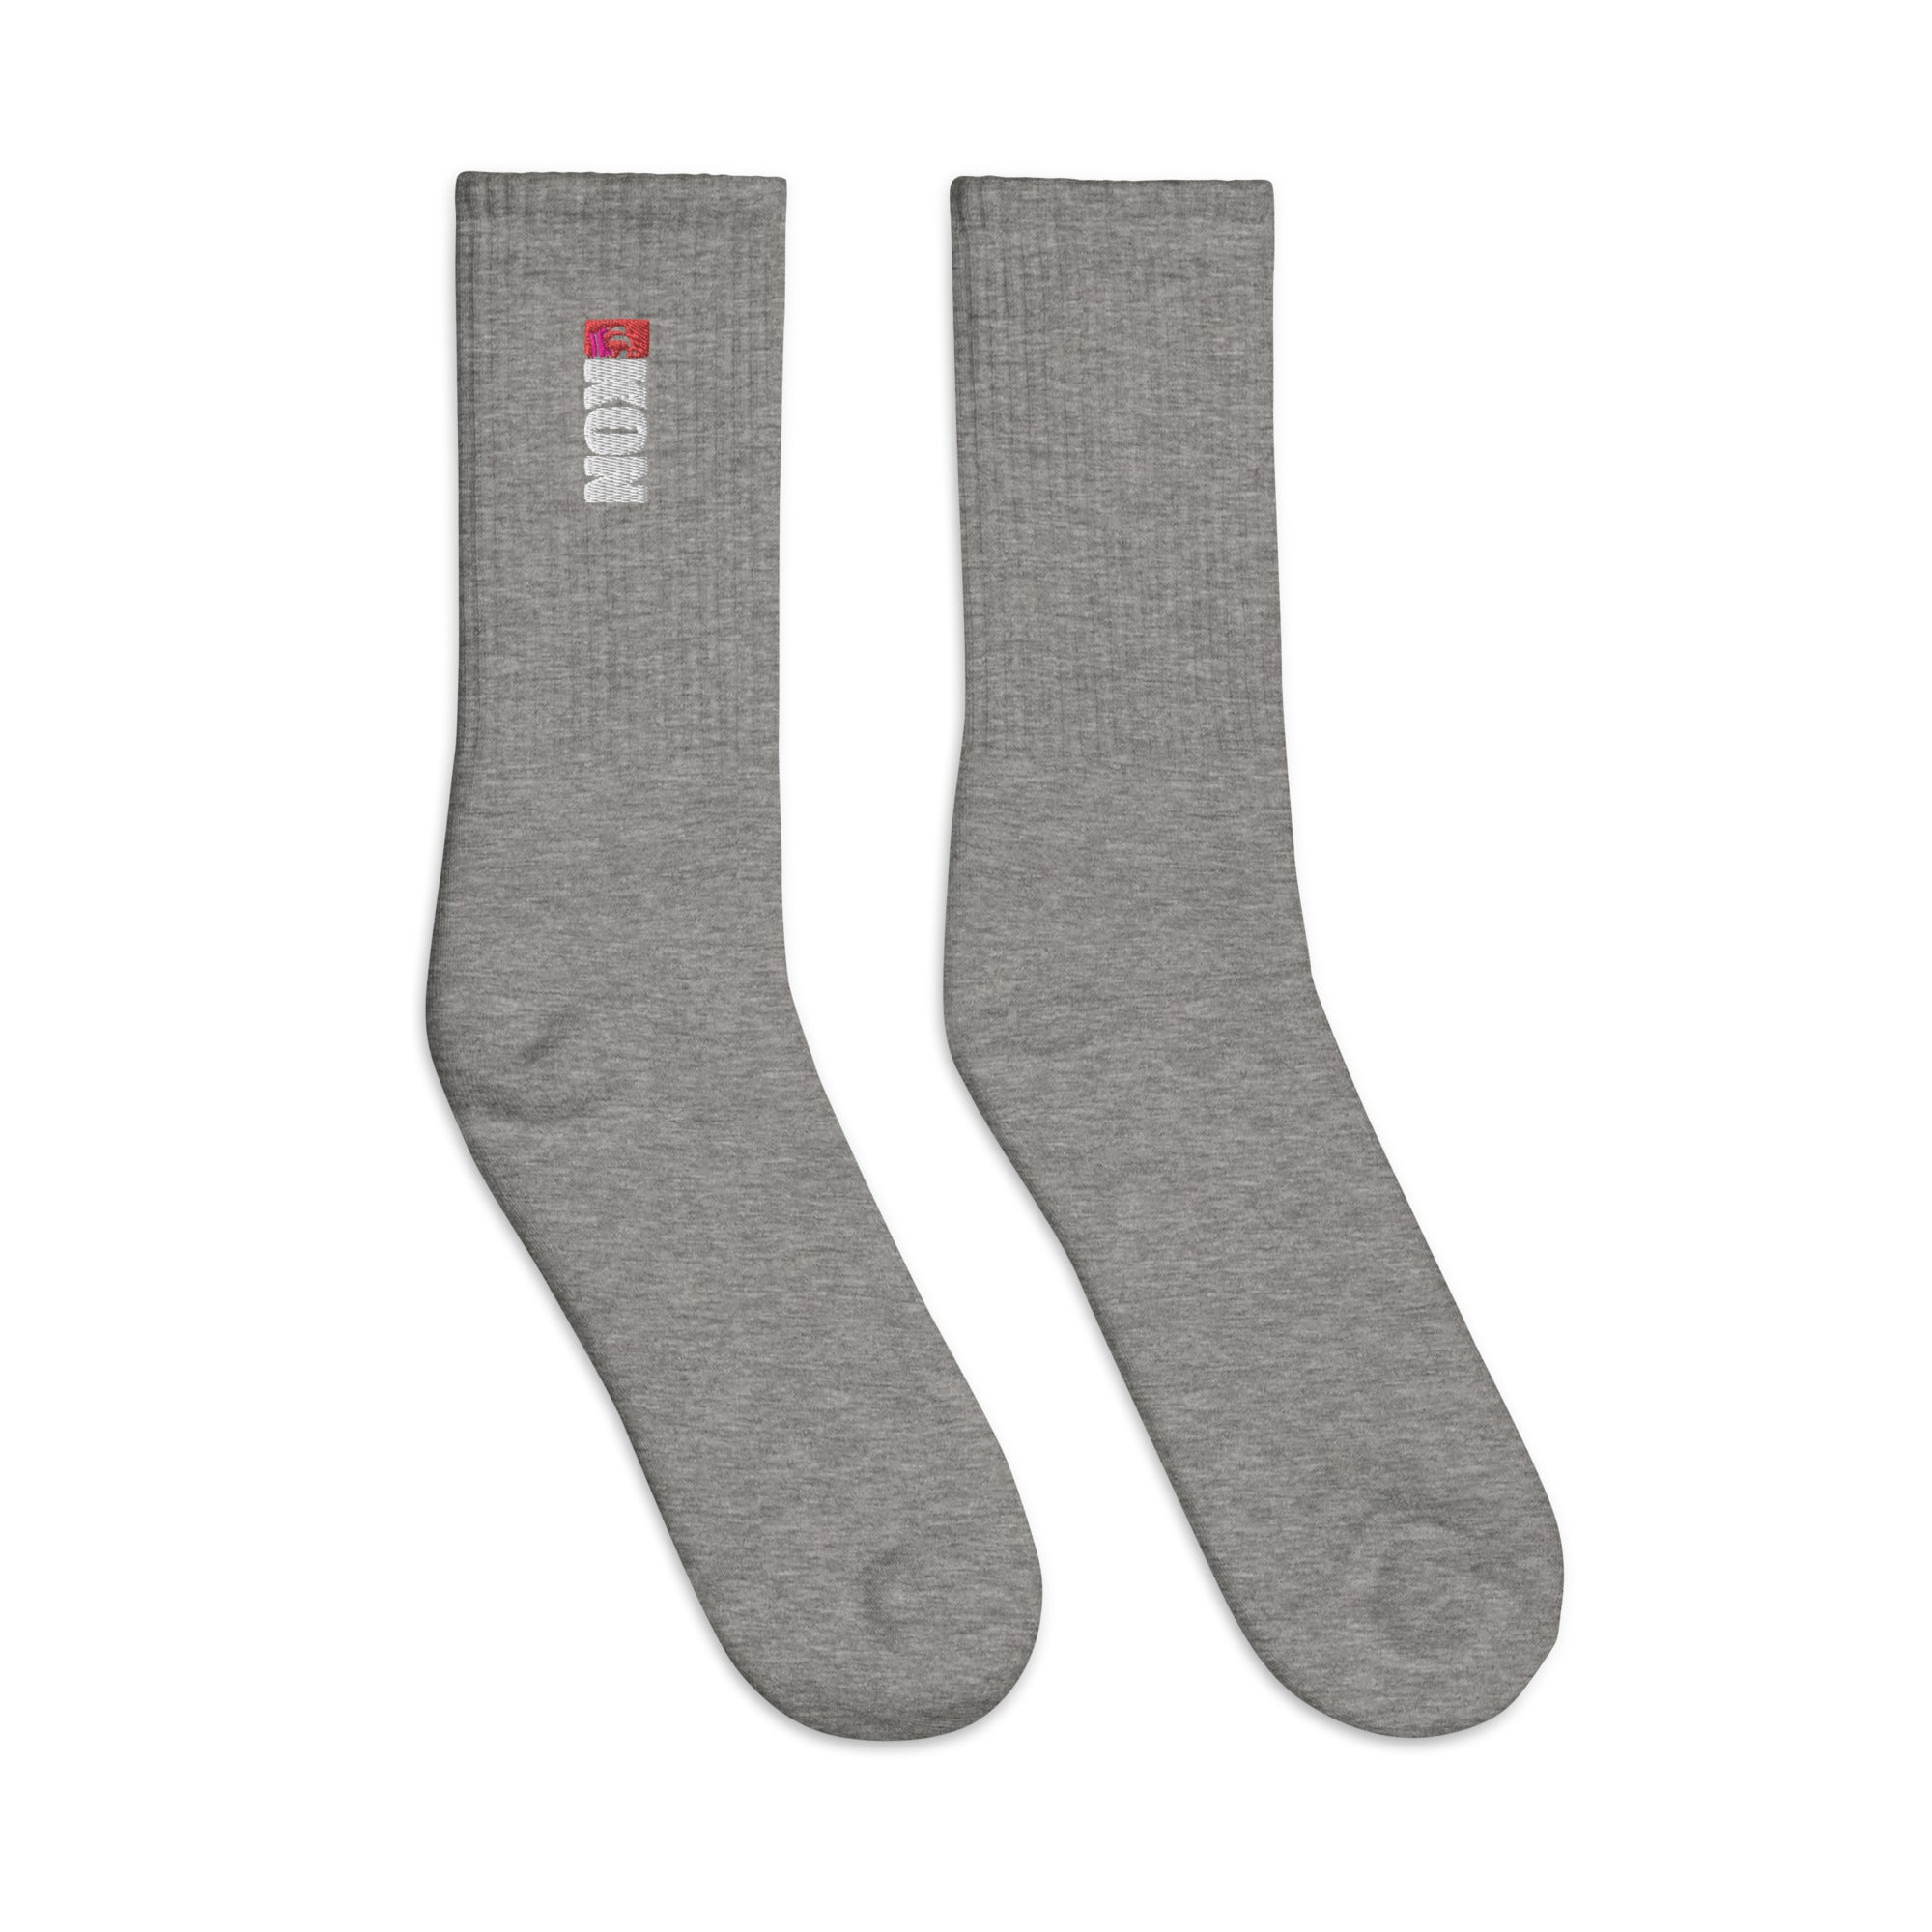 KON Embroidered socks